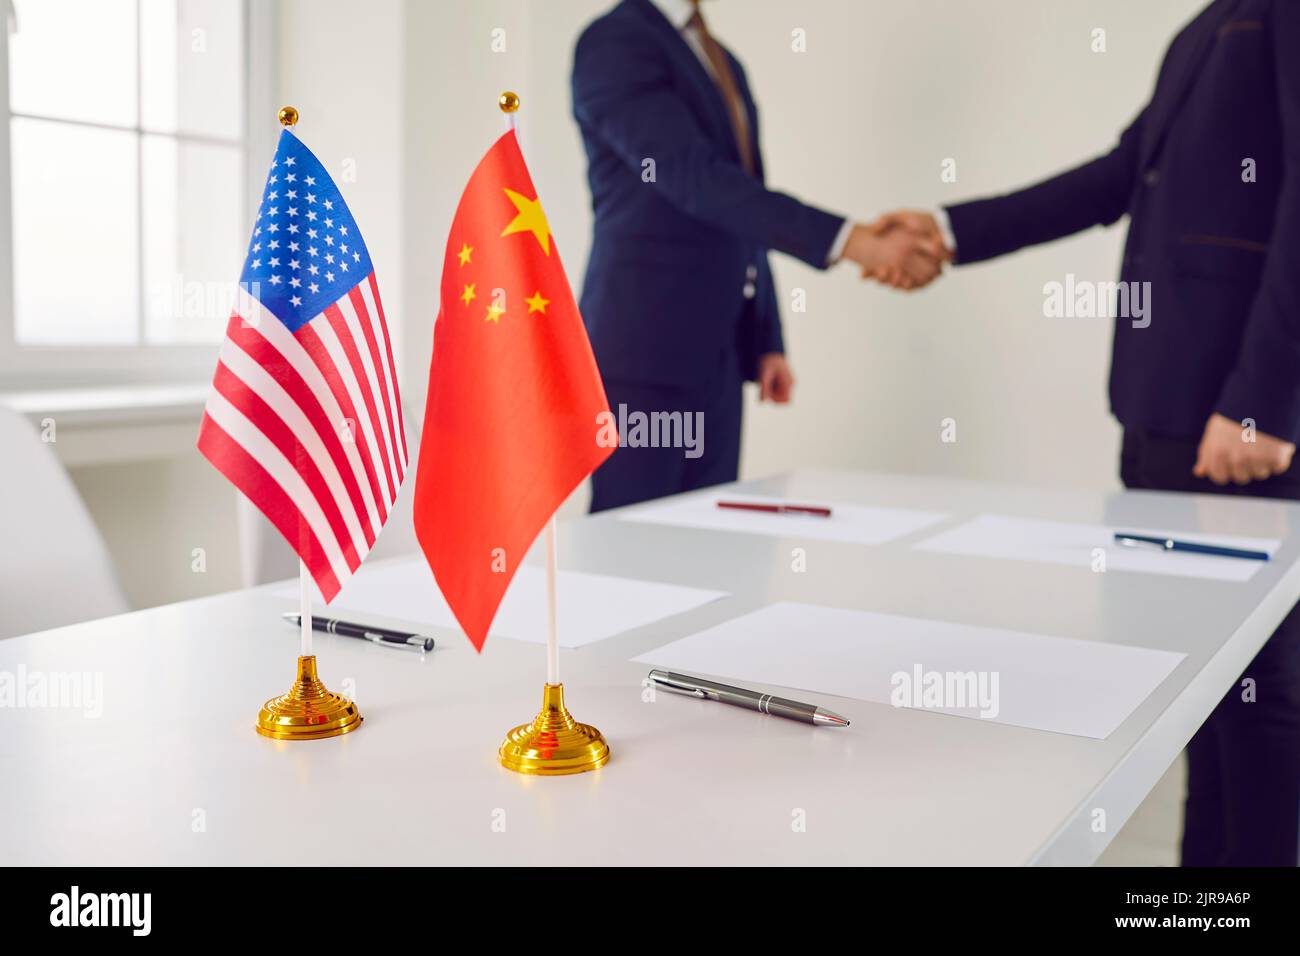 Bandiere politiche di Cina e Stati Uniti d'America sul tavolo vicino a mans in cause aziendali Foto Stock